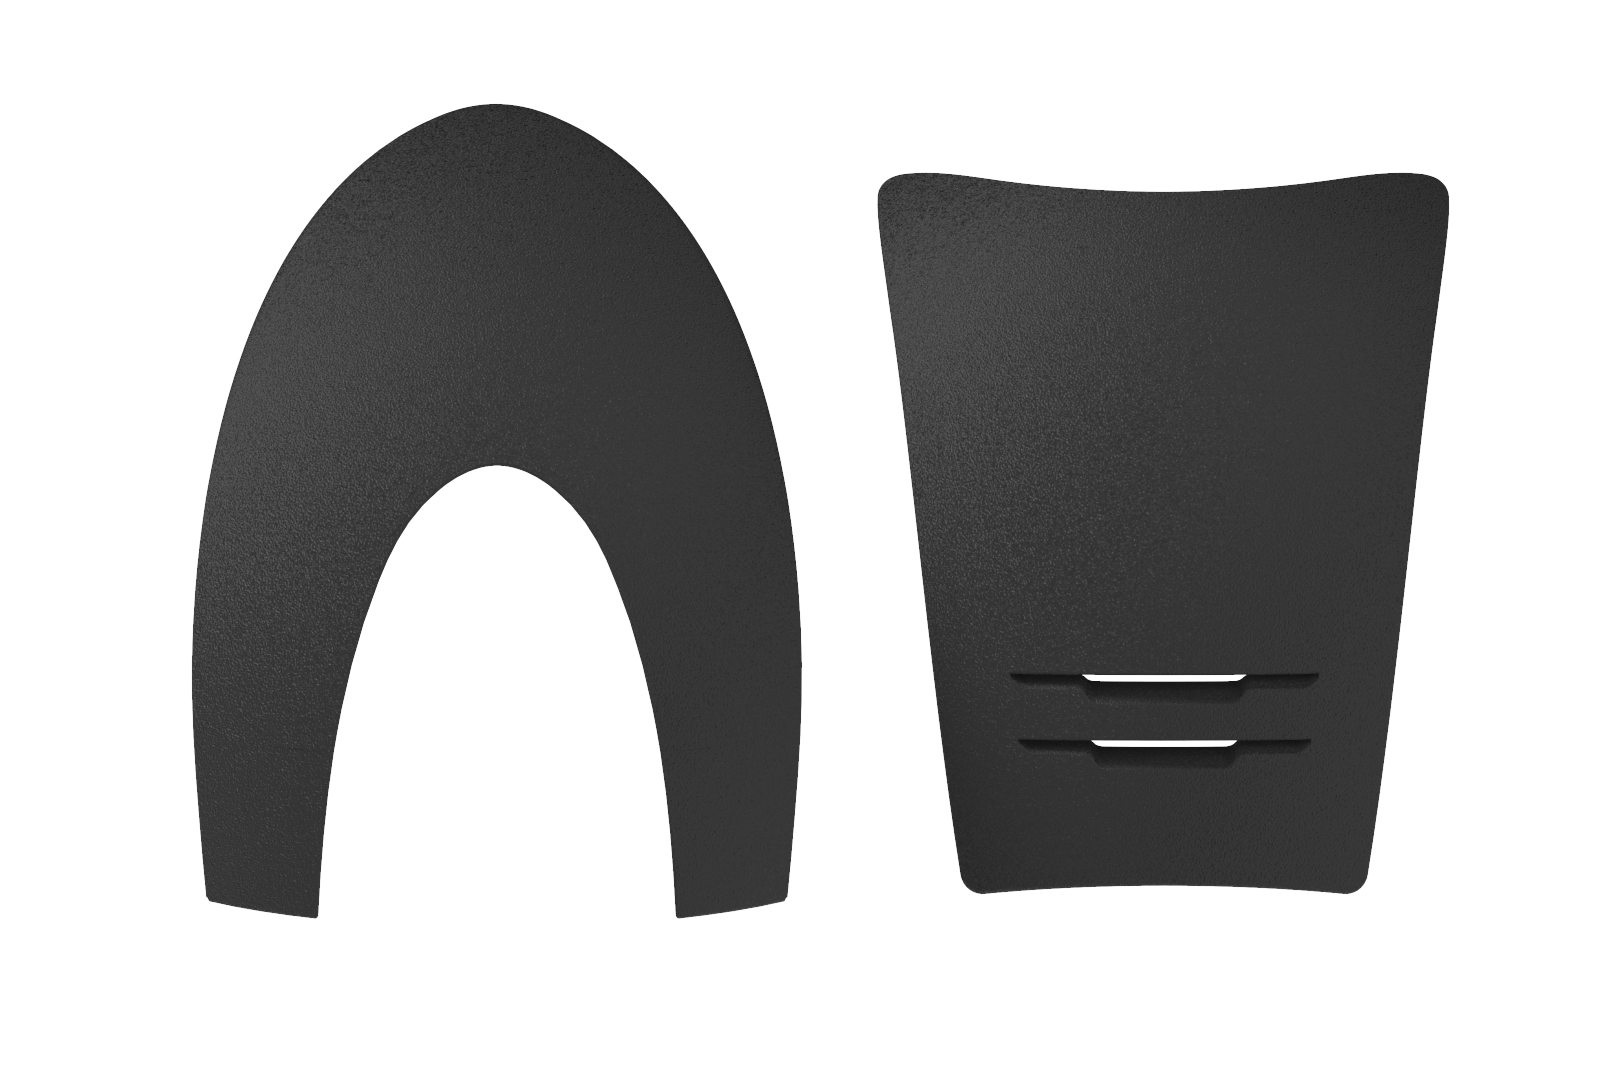 Box inserti fronte + retro - Texturizzato grigio | El gaucho sport